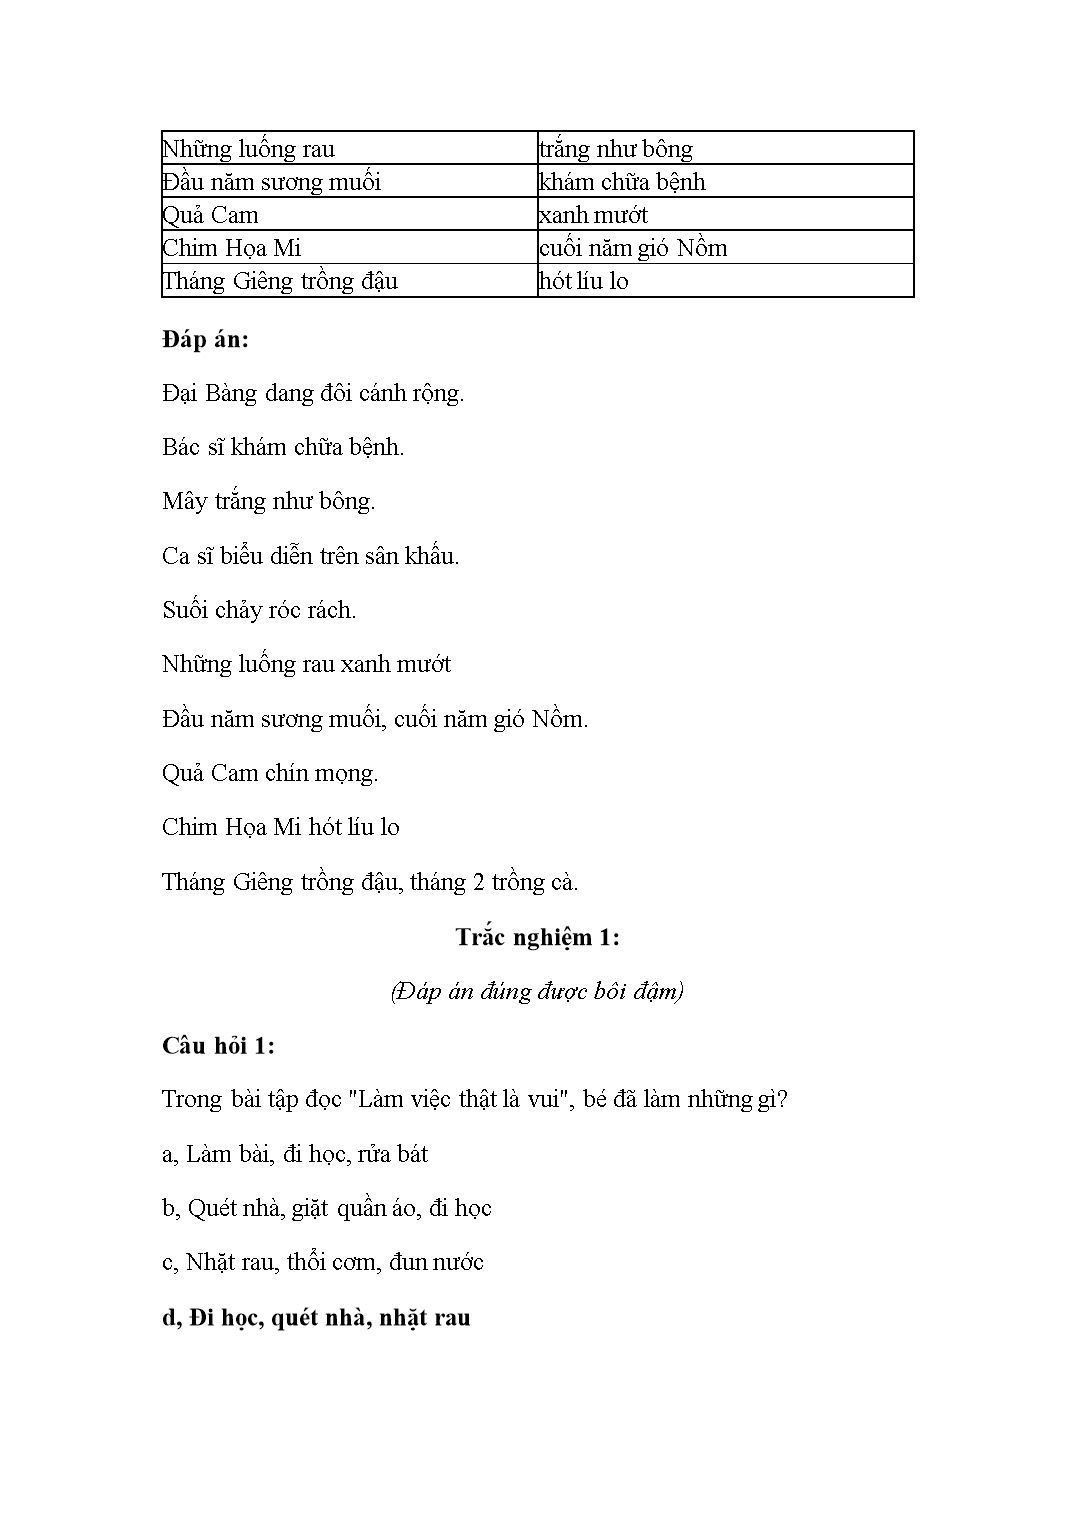 Đề thi Trạng nguyên Tiếng Việt Lớp 2 - Vòng 17 (Cấp huyện) - Năm học 2019-2020 trang 3